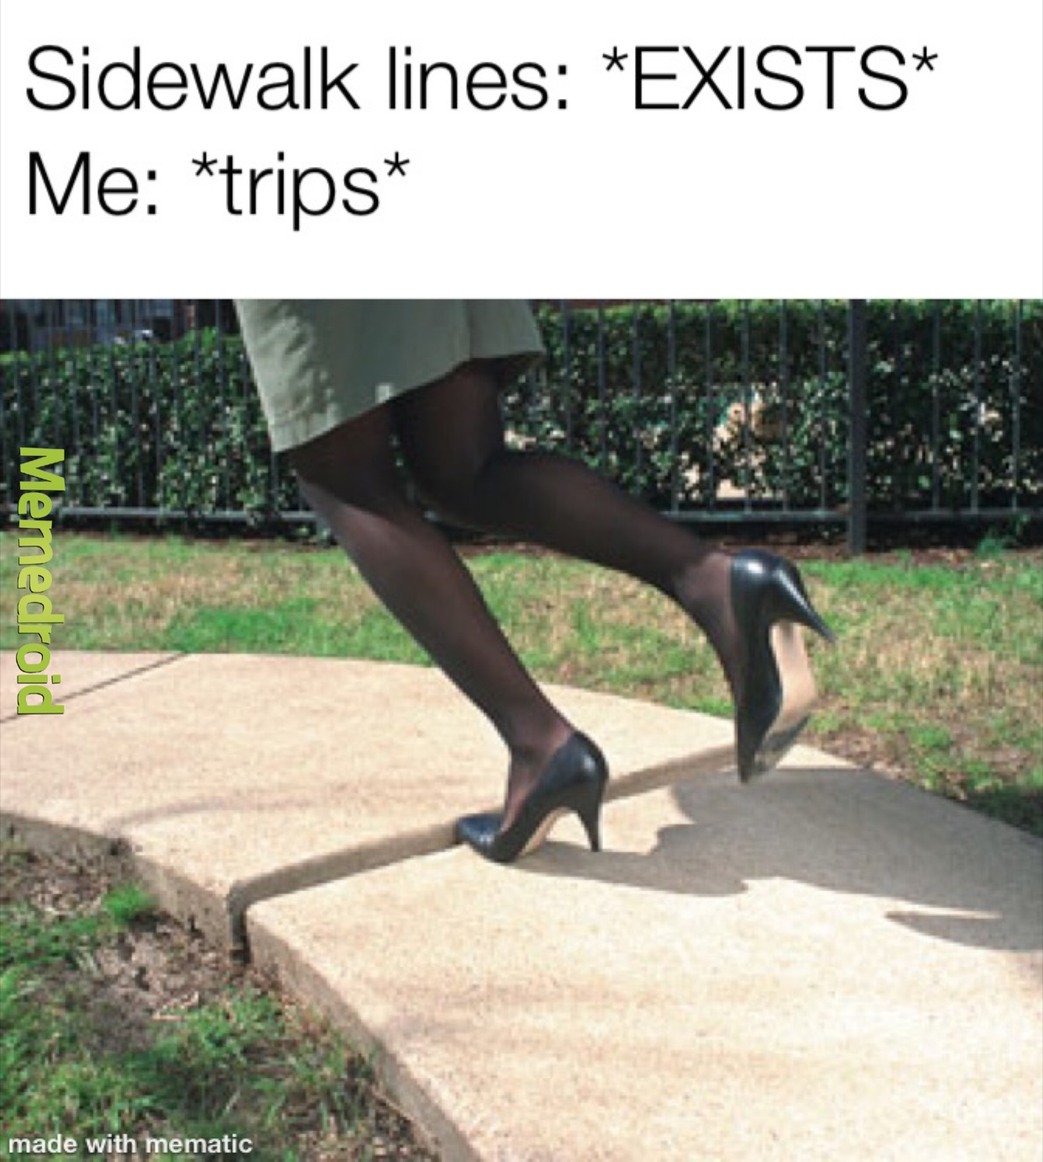 sidewalk vs lines - meme